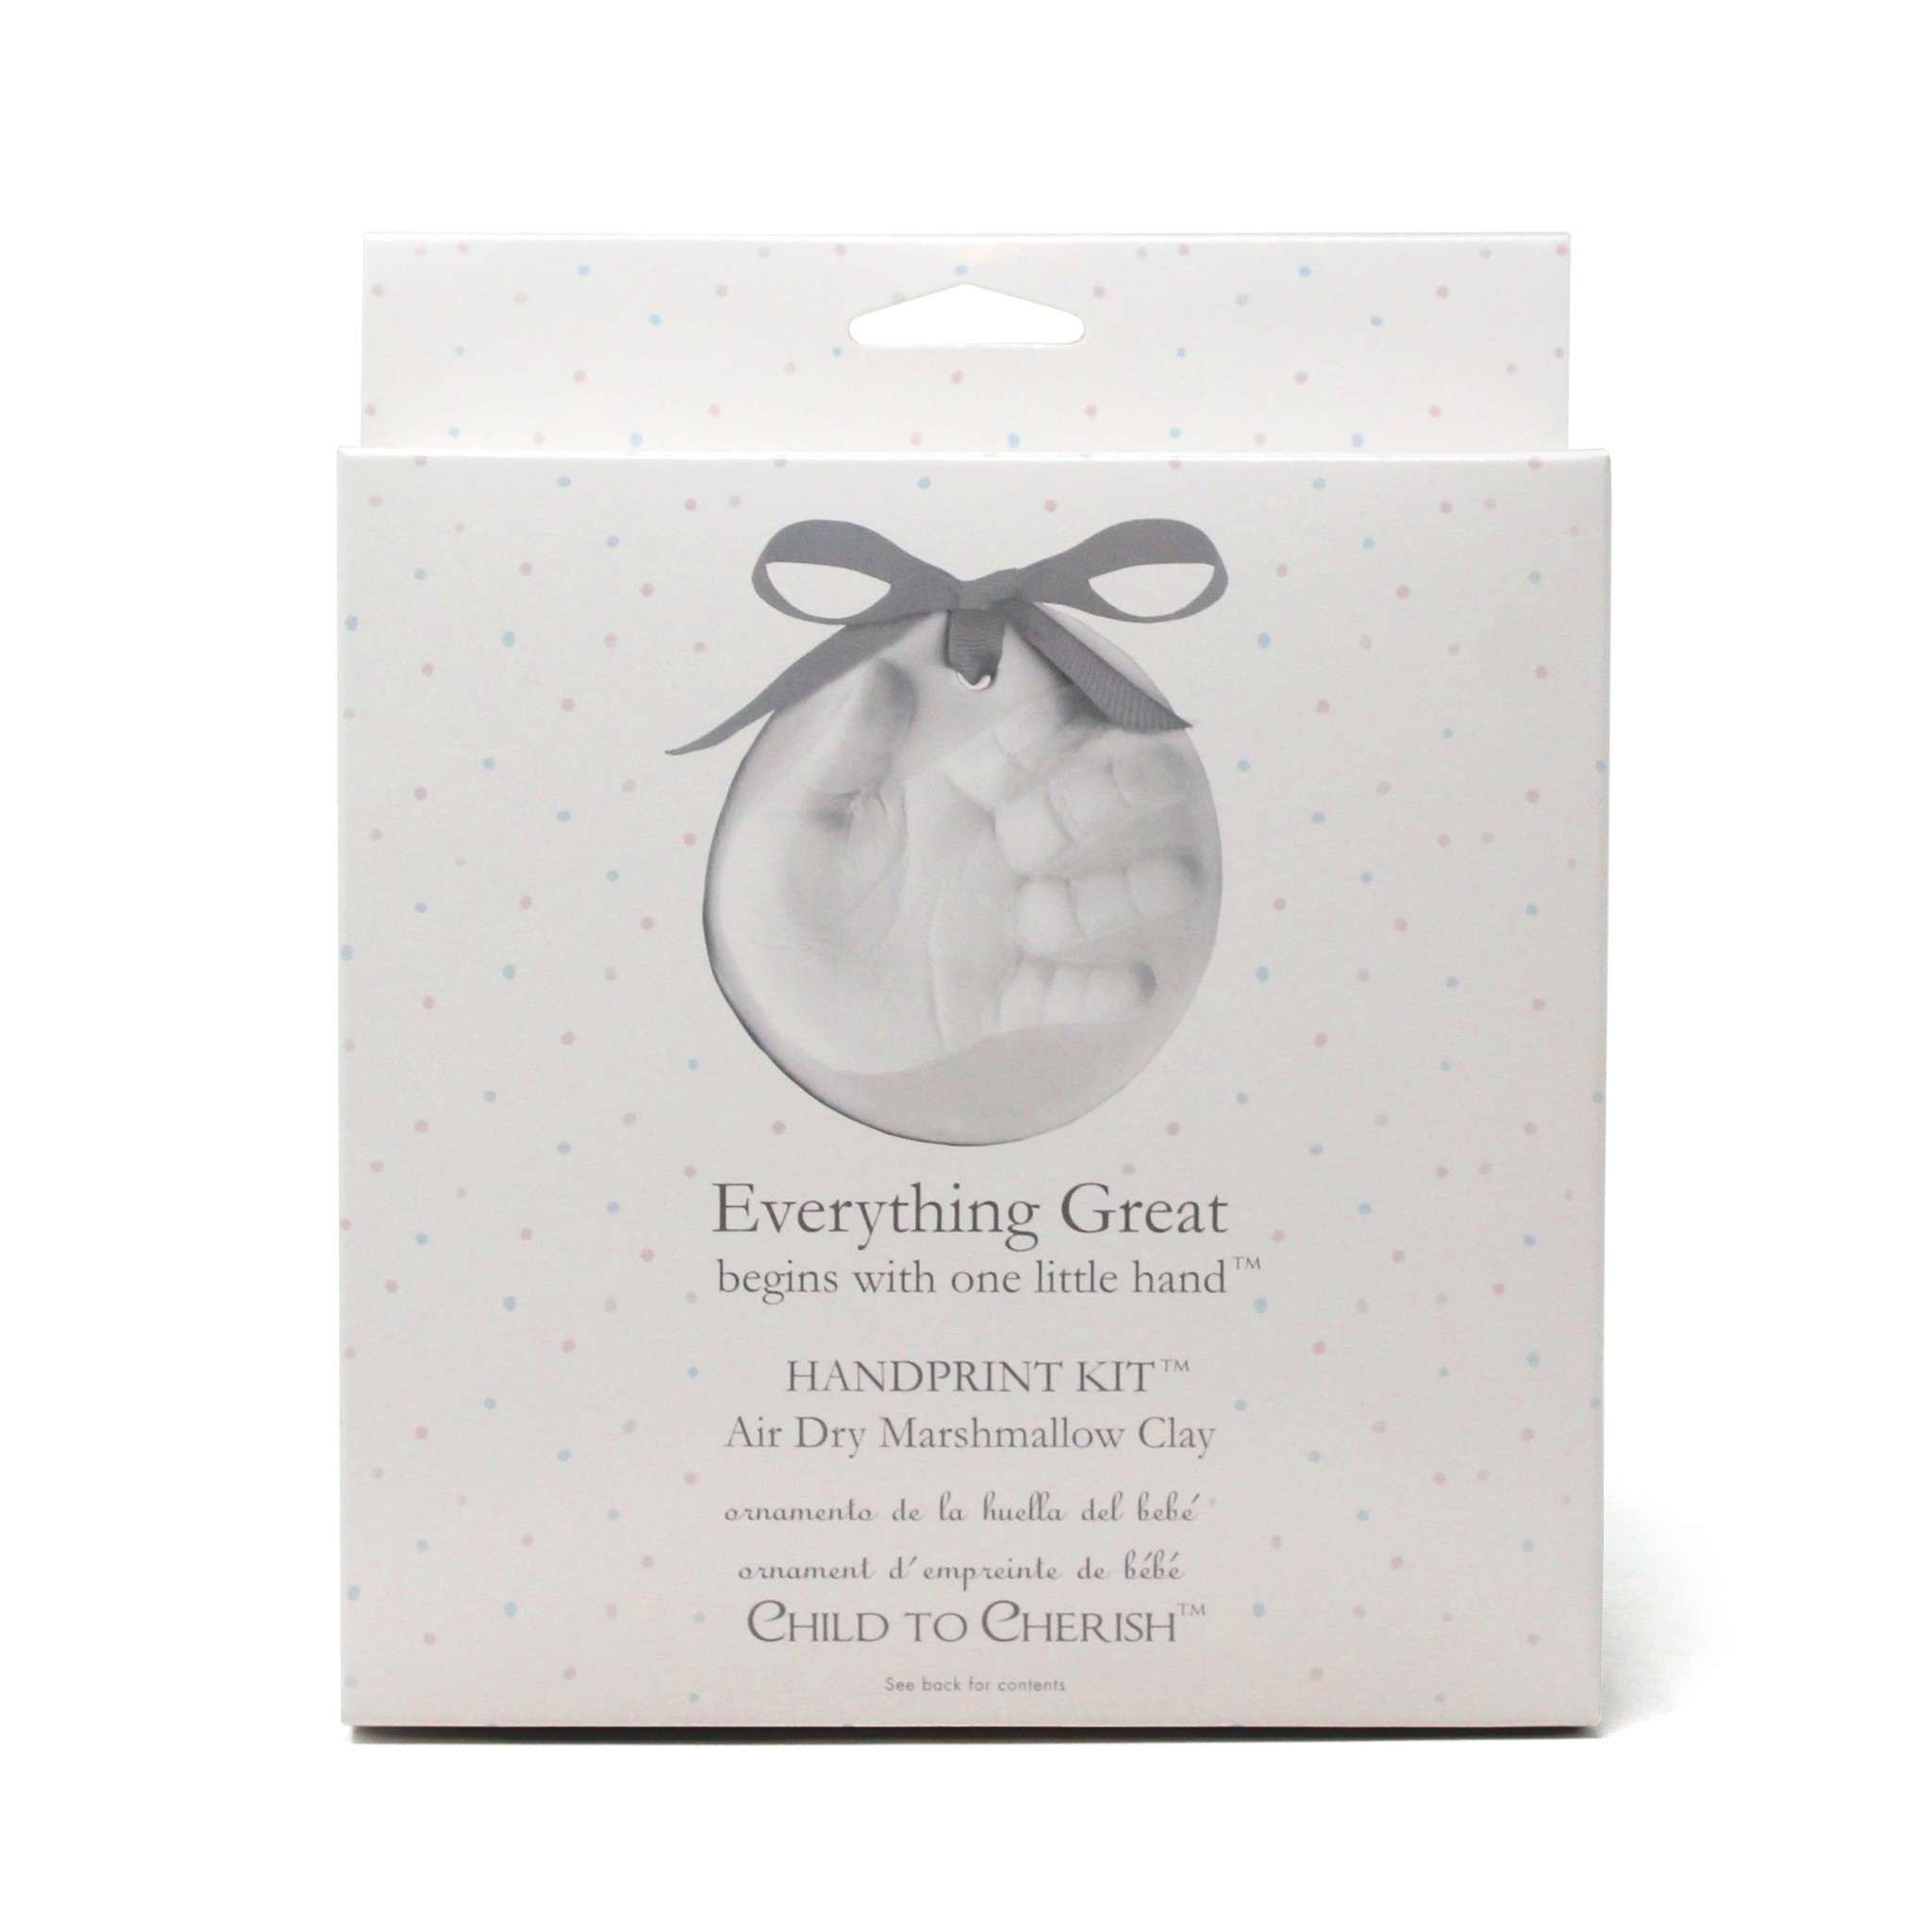 Child to Cherish Child to Cherish - Everything Great Air Dry Marshmallow Clay Handprint Kit